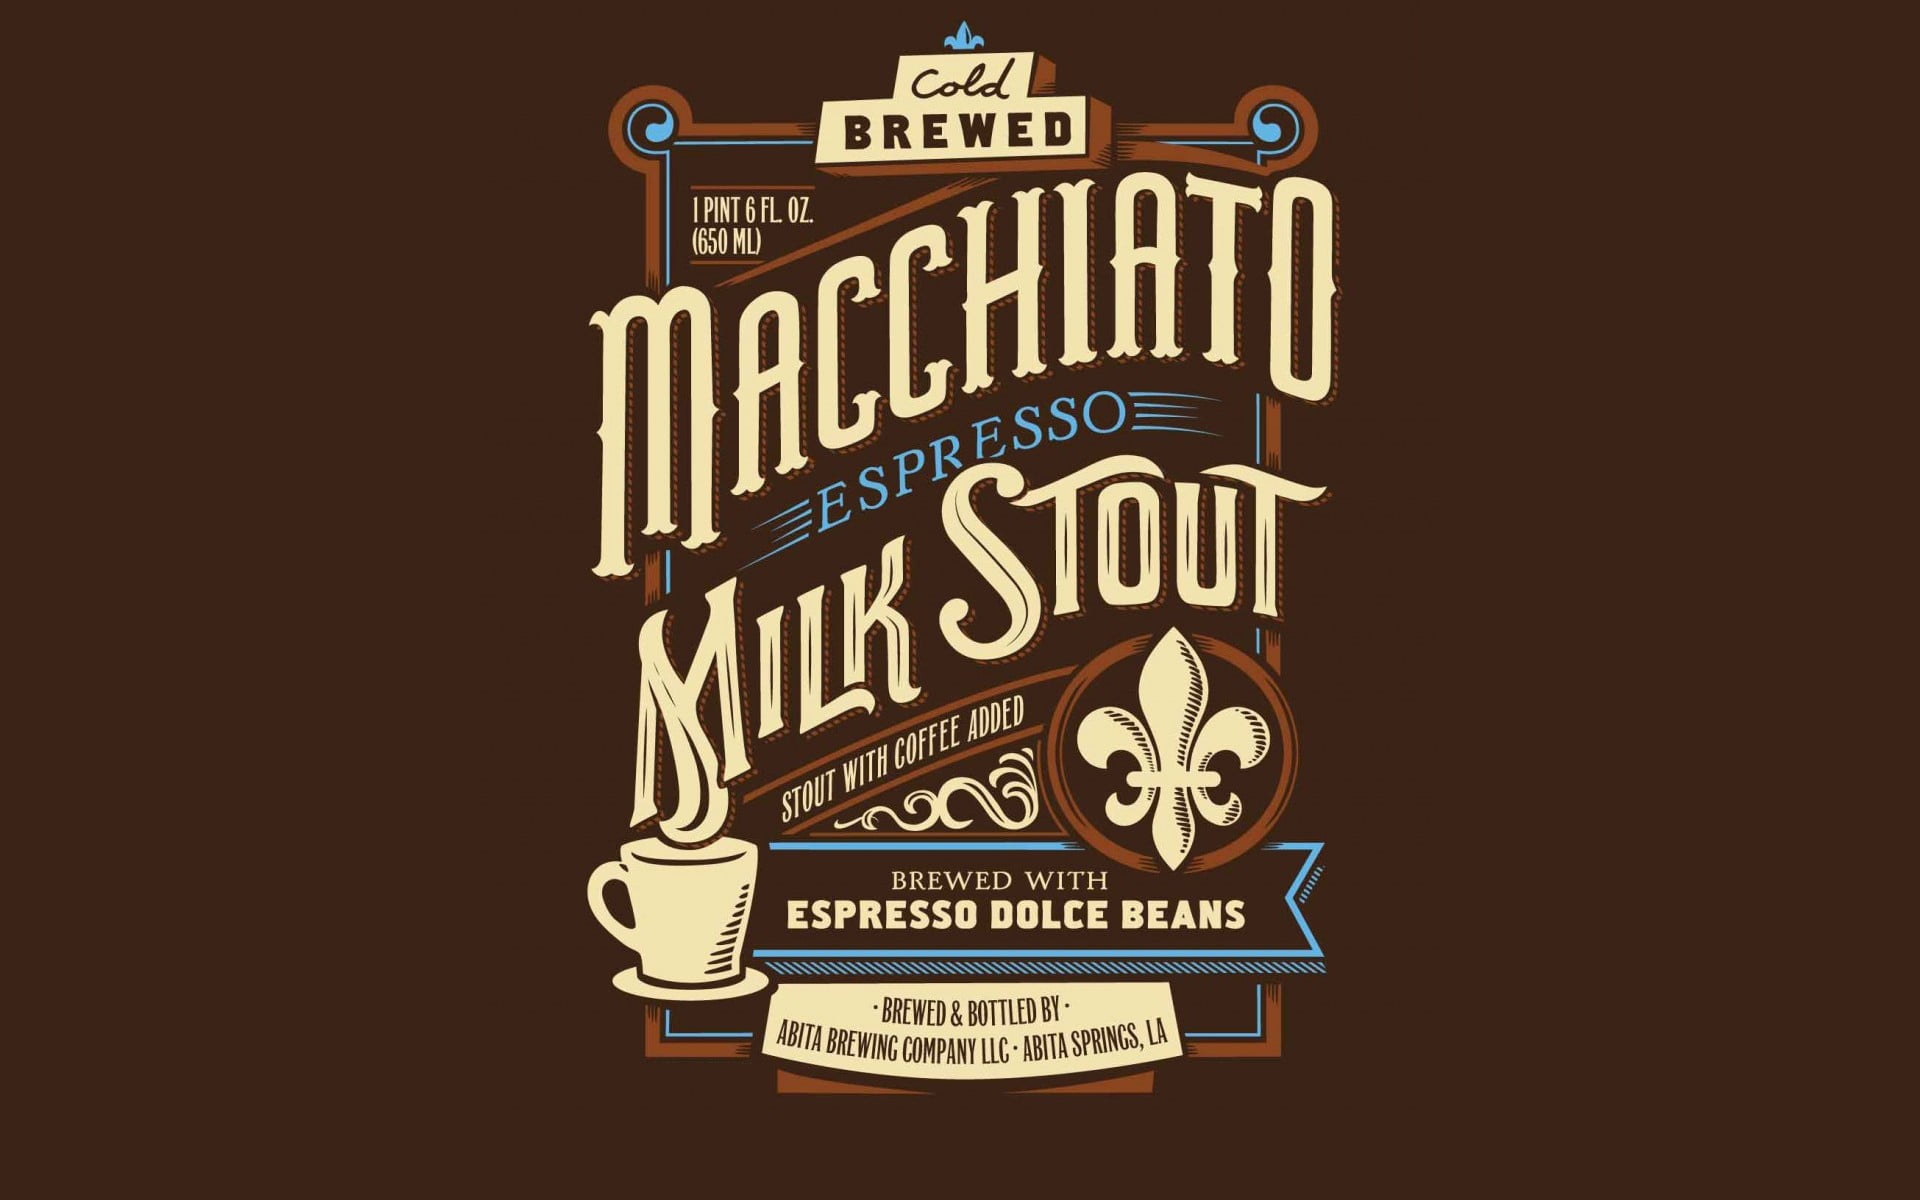 brown Macchiato Milk Stout poster